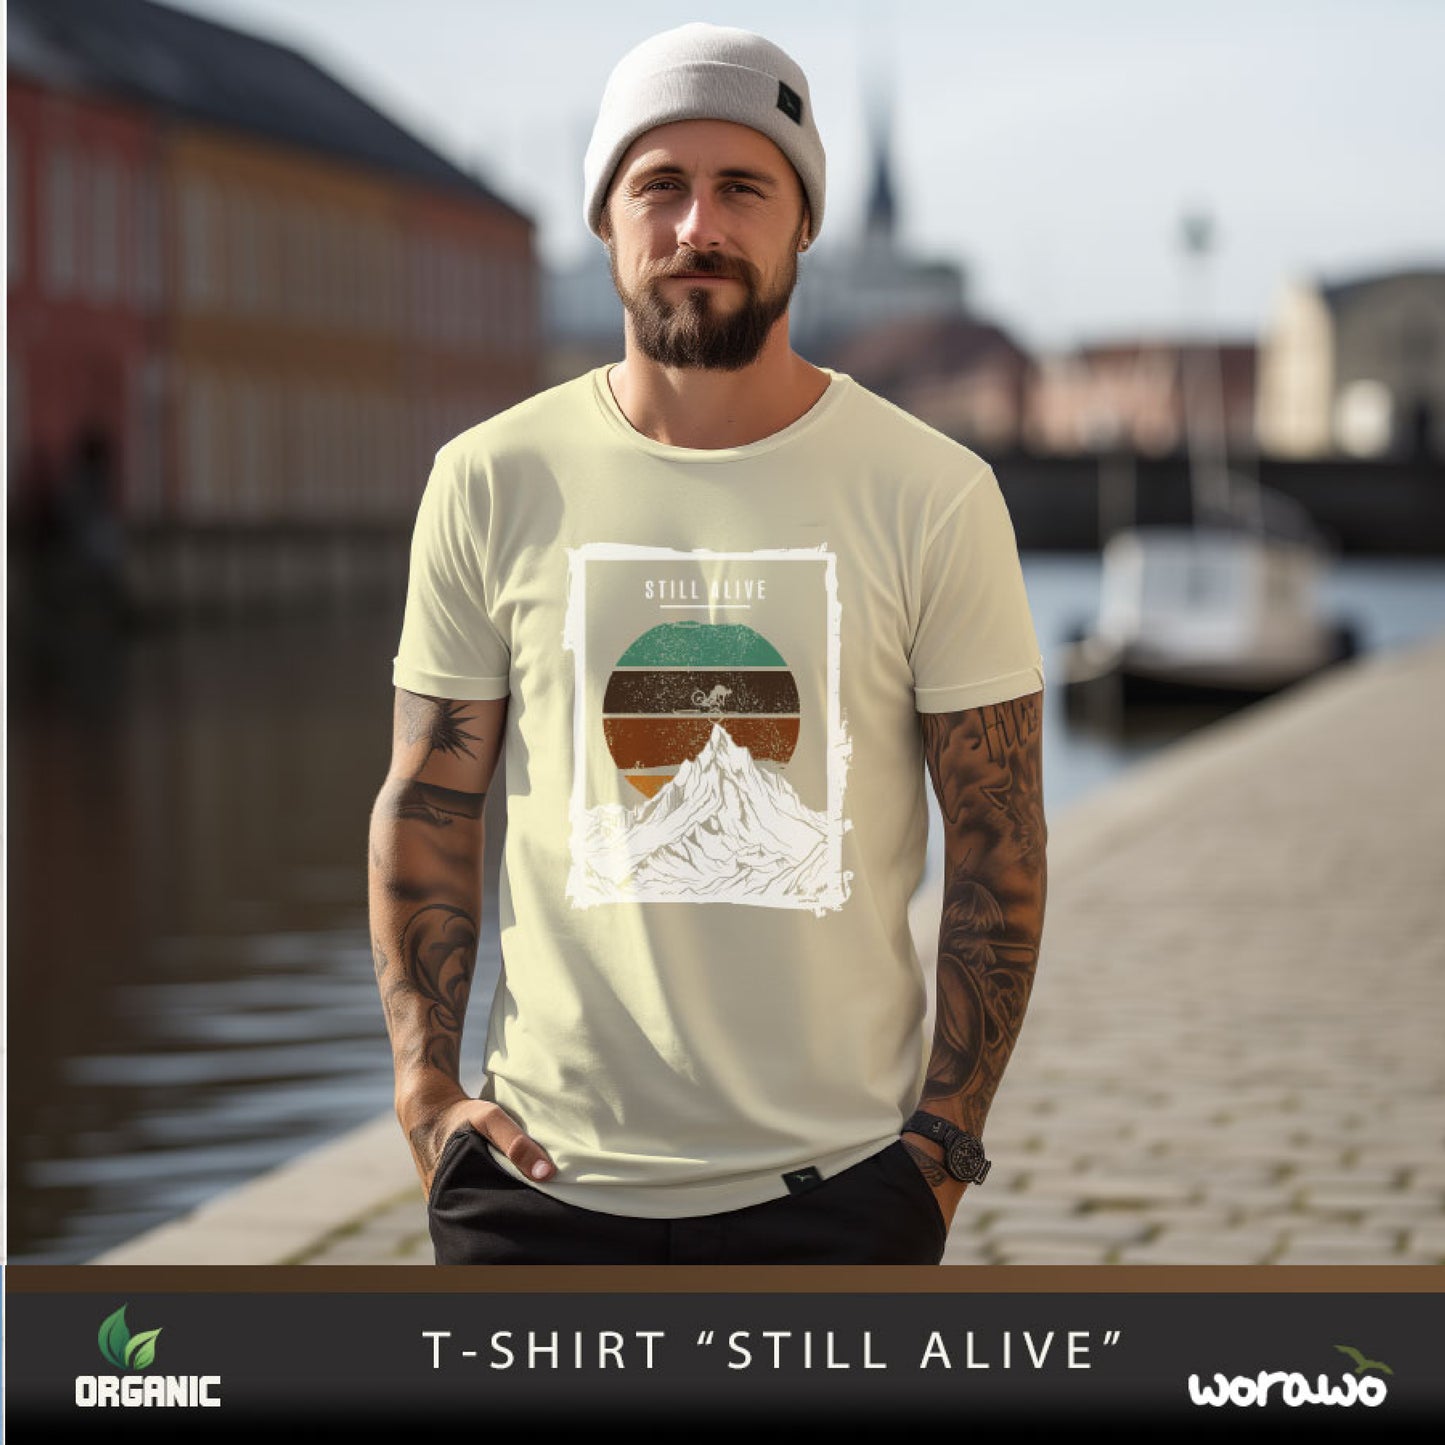 T-Shirt "Still Alive"